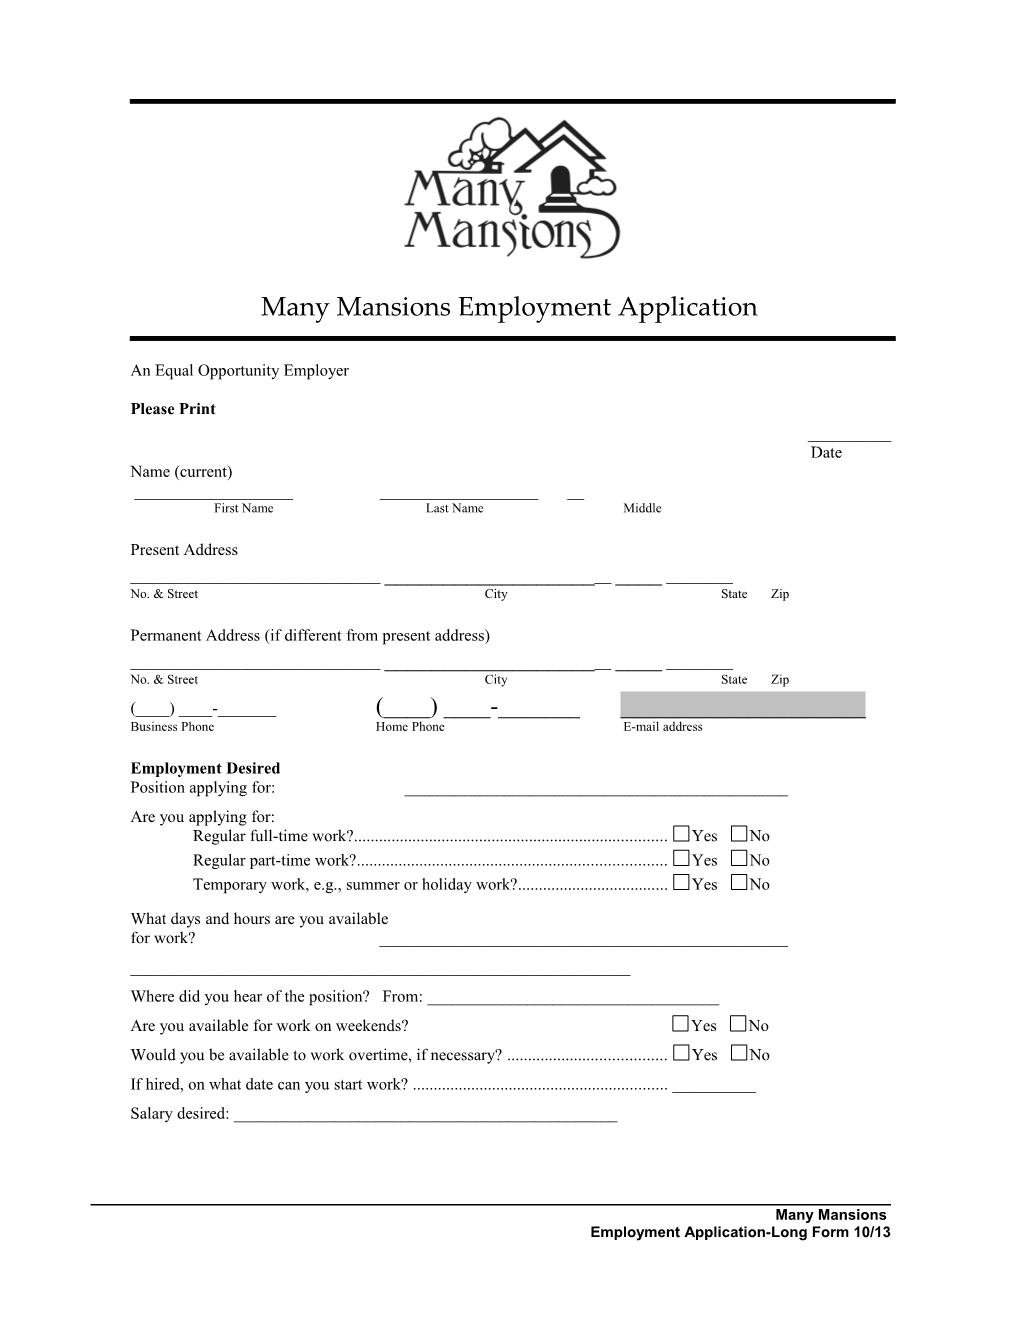 MM Employment Application (Long)